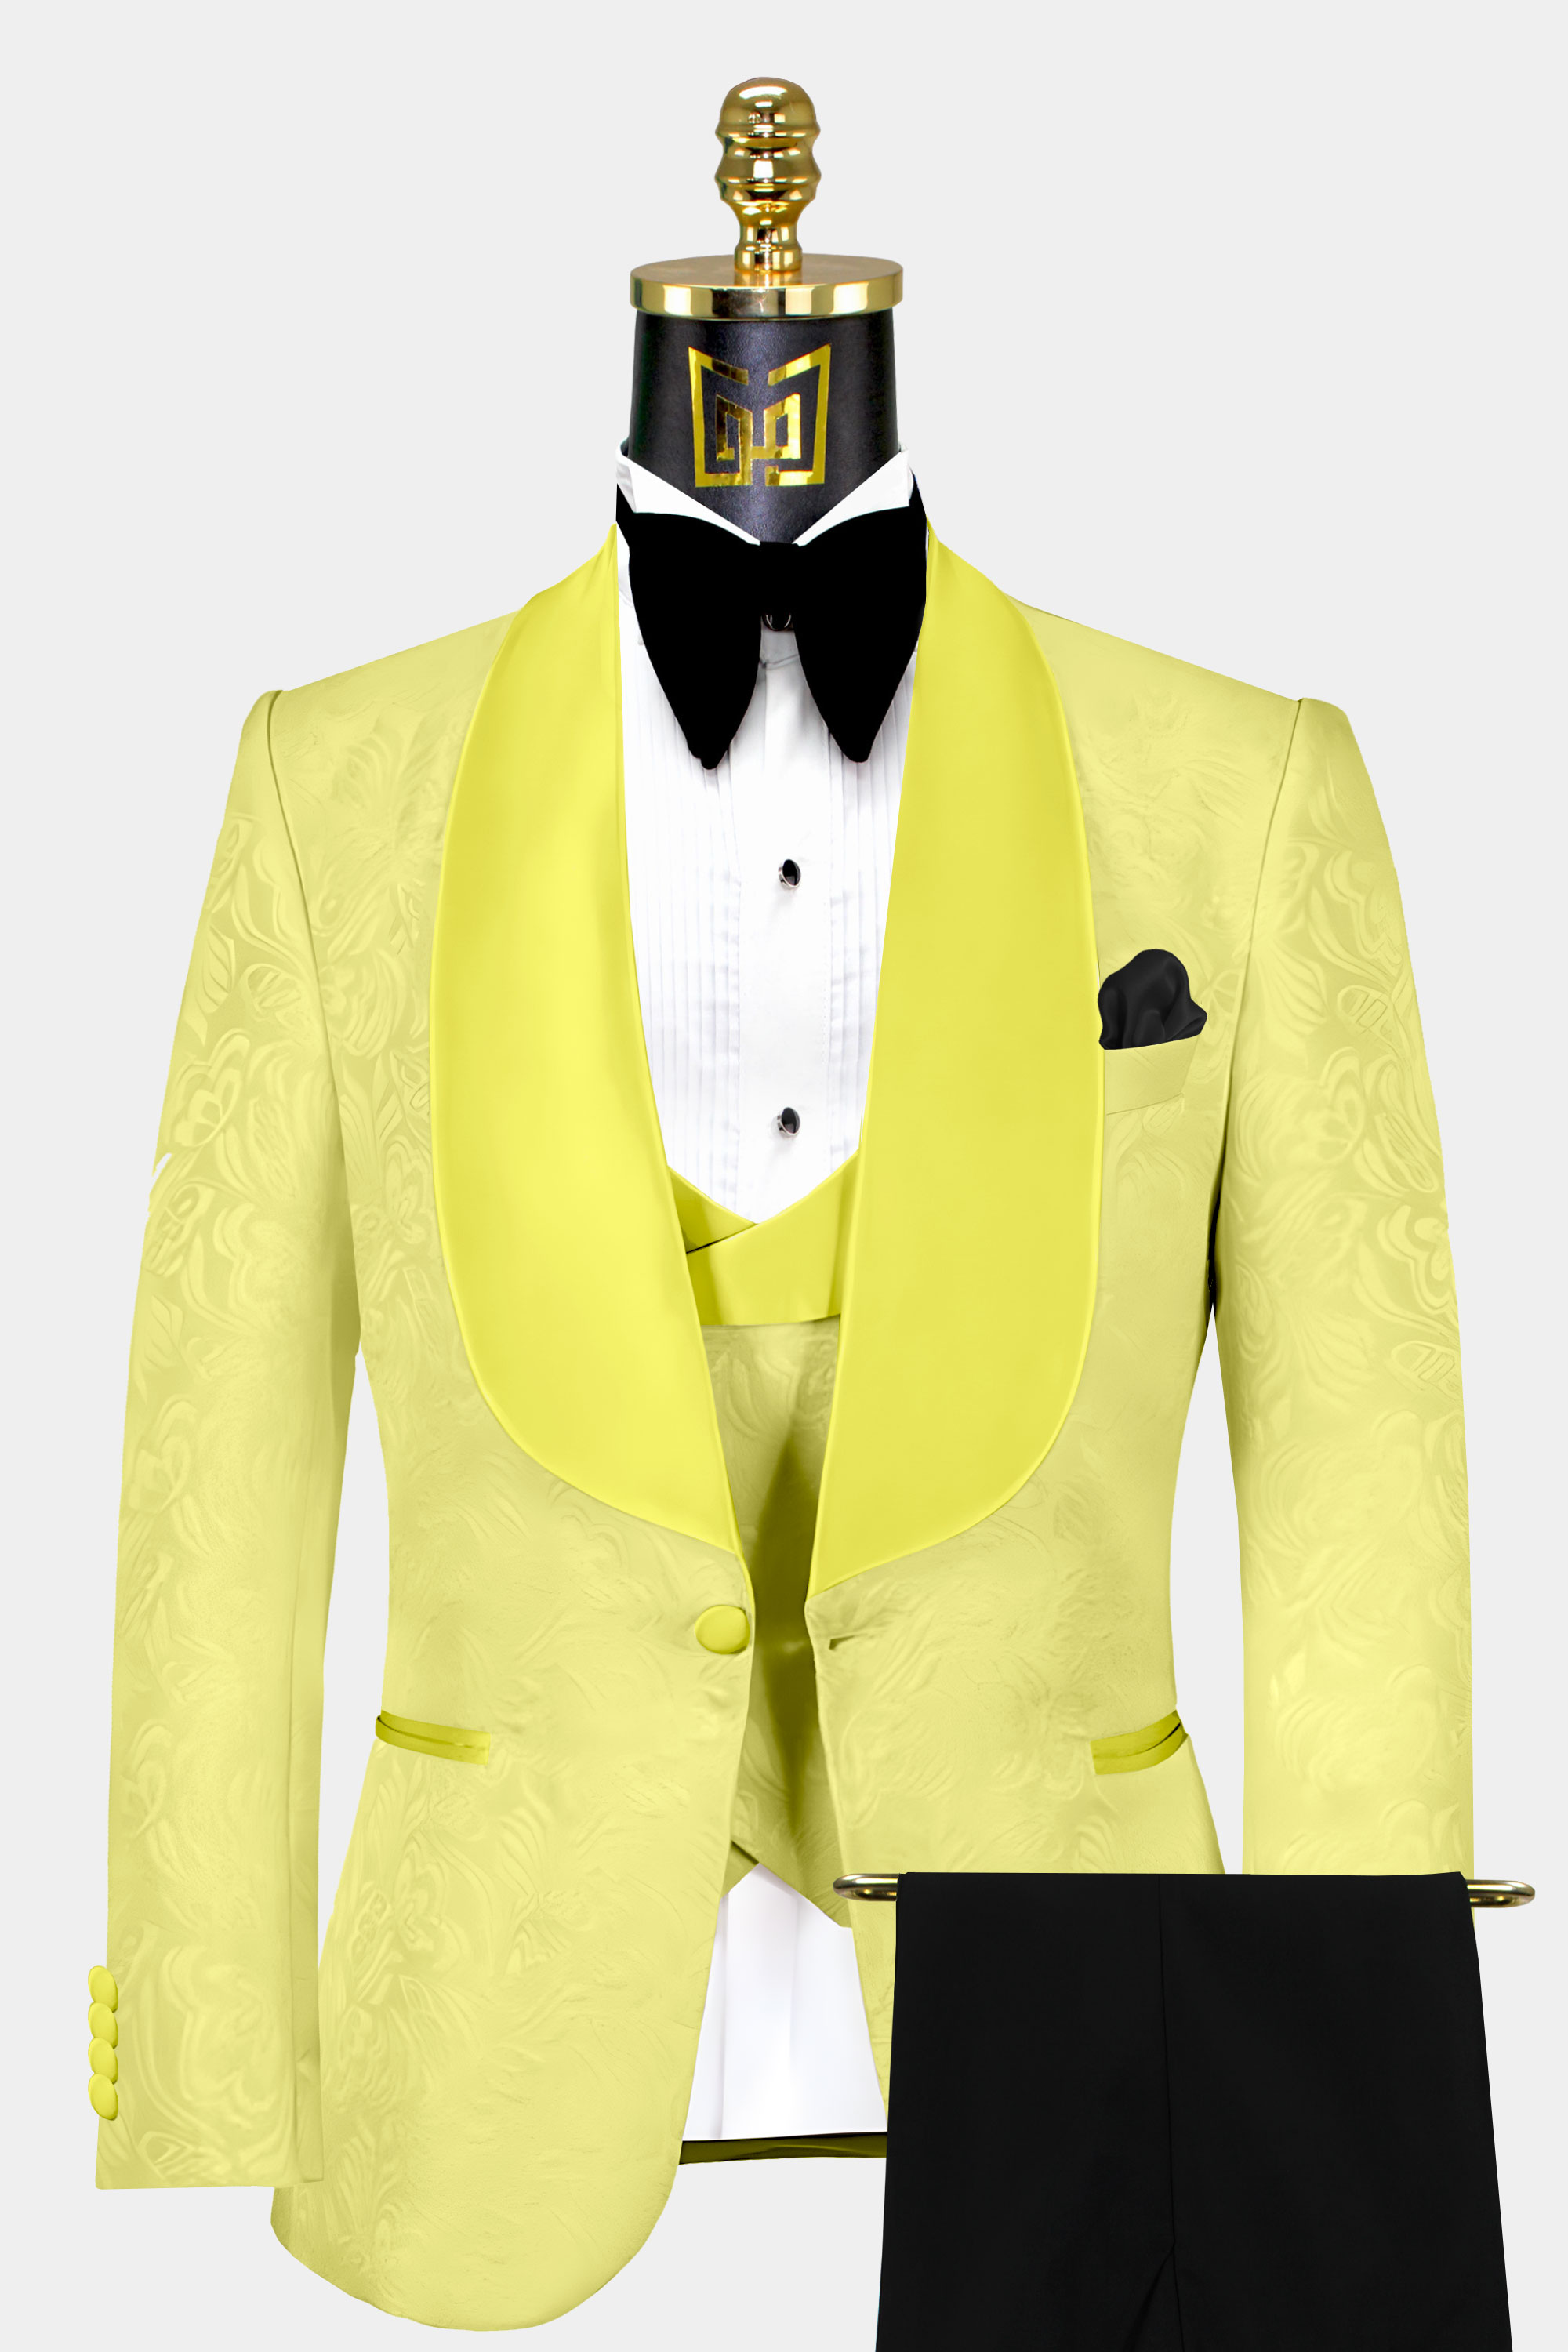 Yellow-and-Black-Tuxedo-Wedding-Groom-Suit-from-Gentlemansguru.com